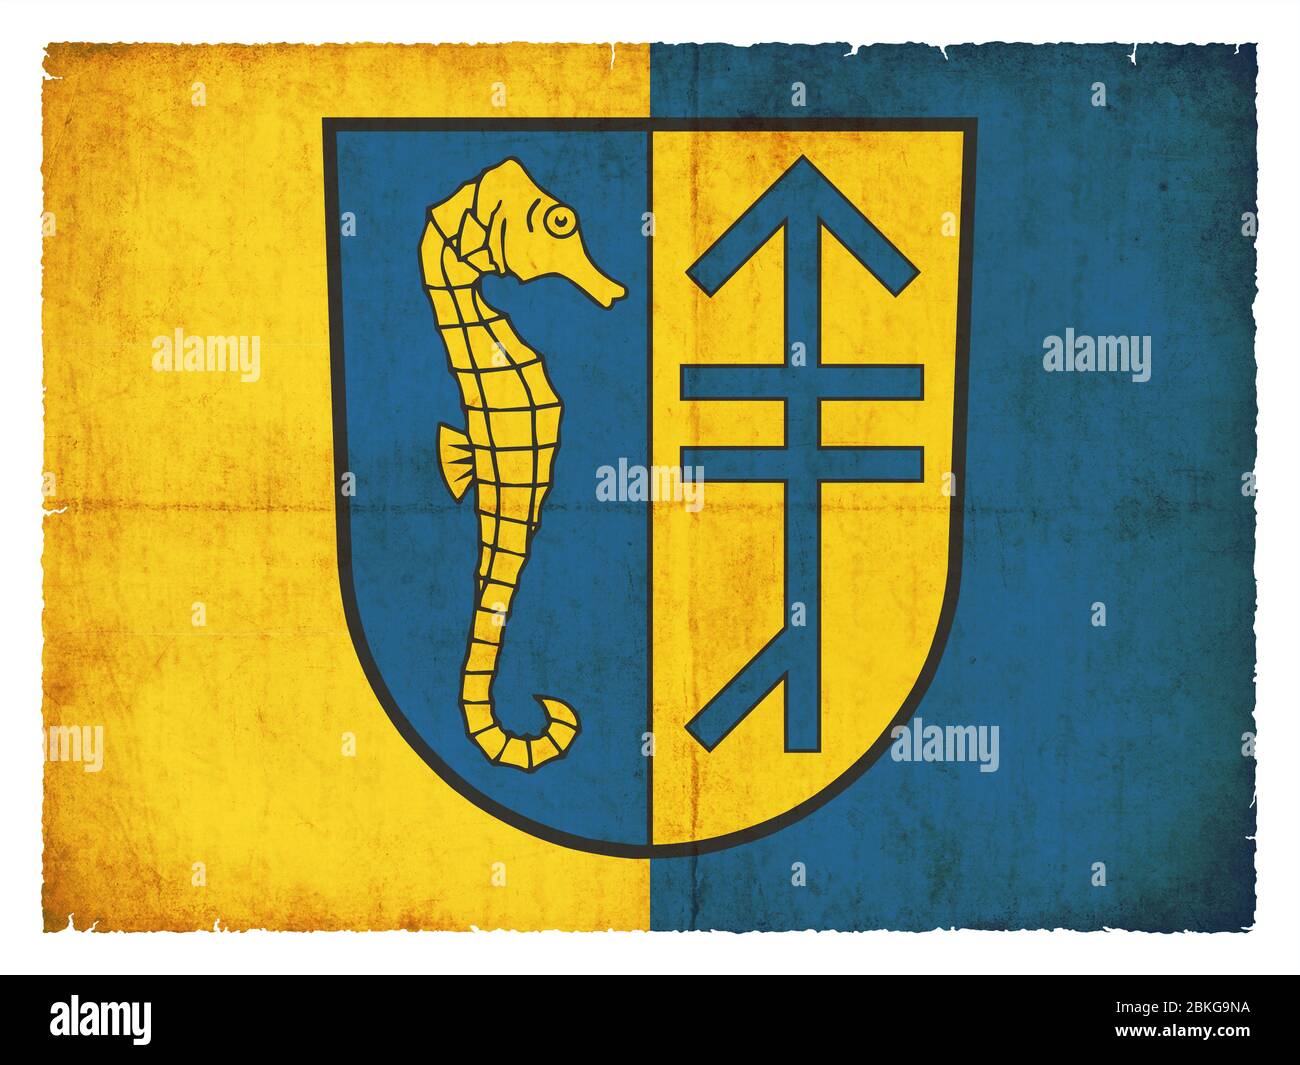 Bandera de la isla alemana Hiddensee (Mecklemburgo-Pomania Occidental) creada al estilo grunge Foto de stock